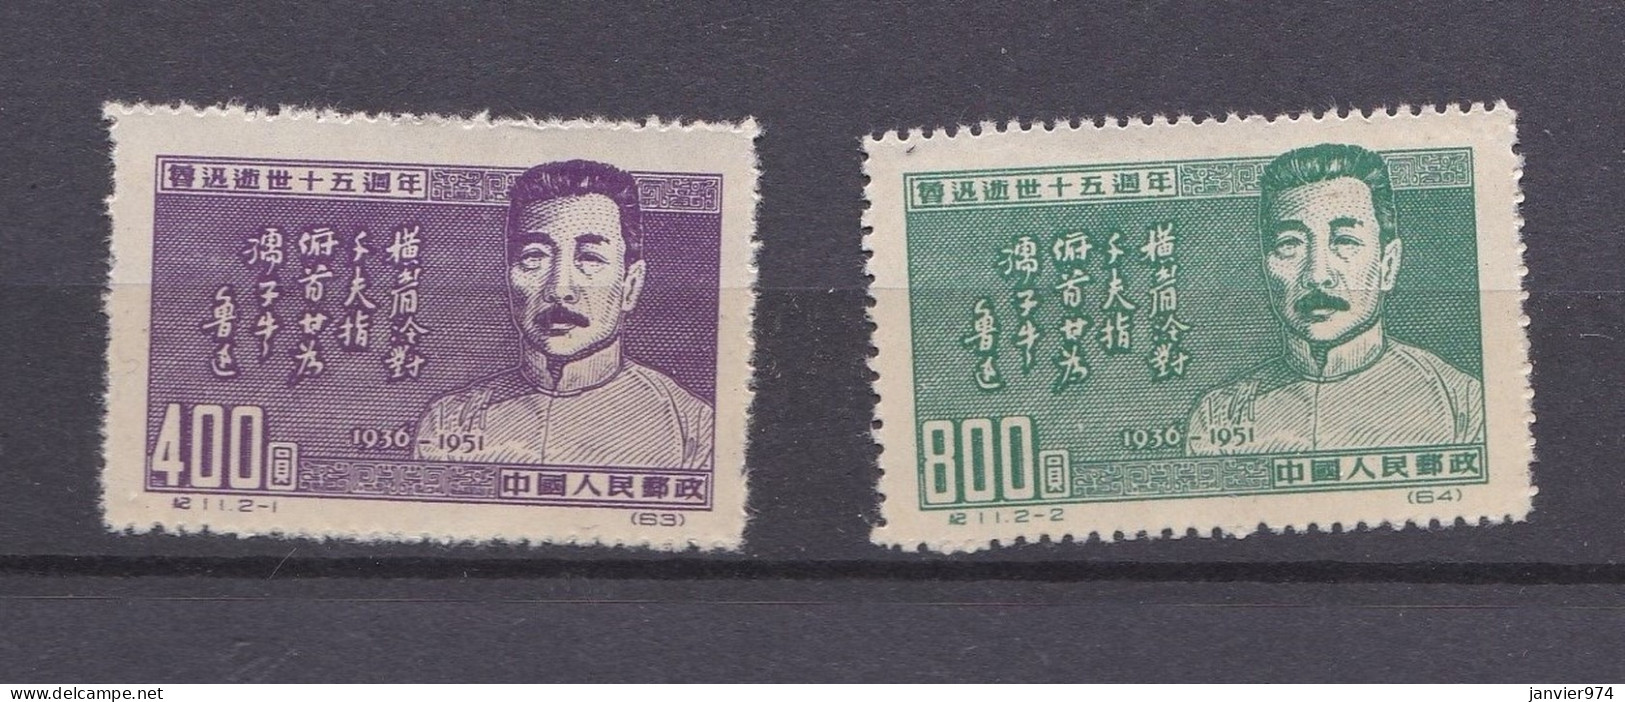 Chine 1951 La Serie Complete Anniversaire De La Mort De Lu Xun, 2 Timbres Neufs 127 – 128 - Neufs